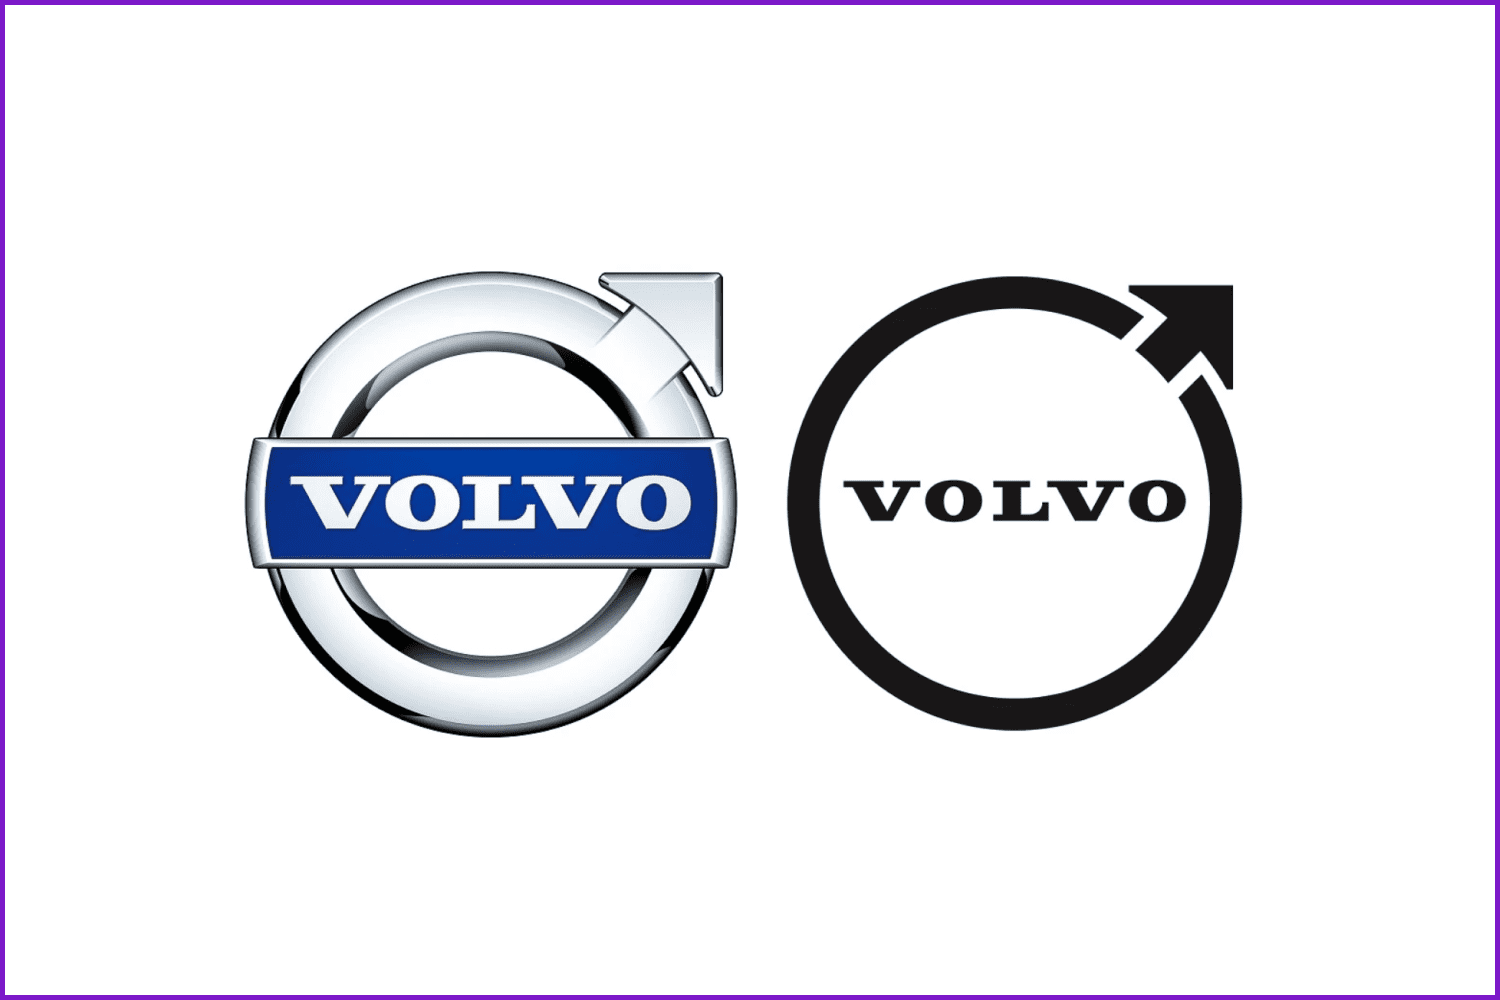 Volov logotype variants.